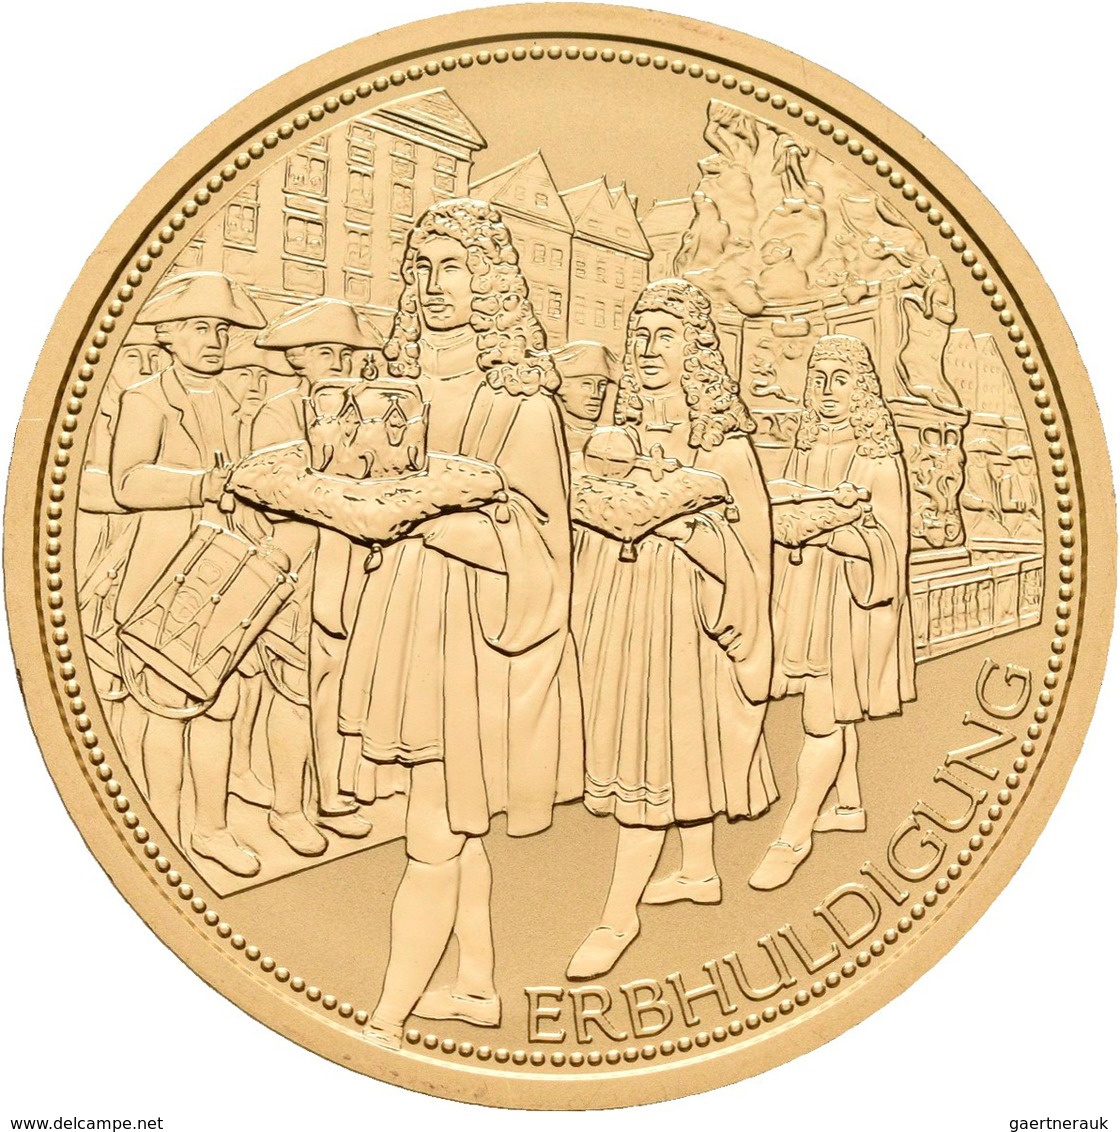 Österreich - Anlagegold: 100 Euro 2009 Kronen Der Habsburger - Der österreichische Erzherzogshut. Da - Austria